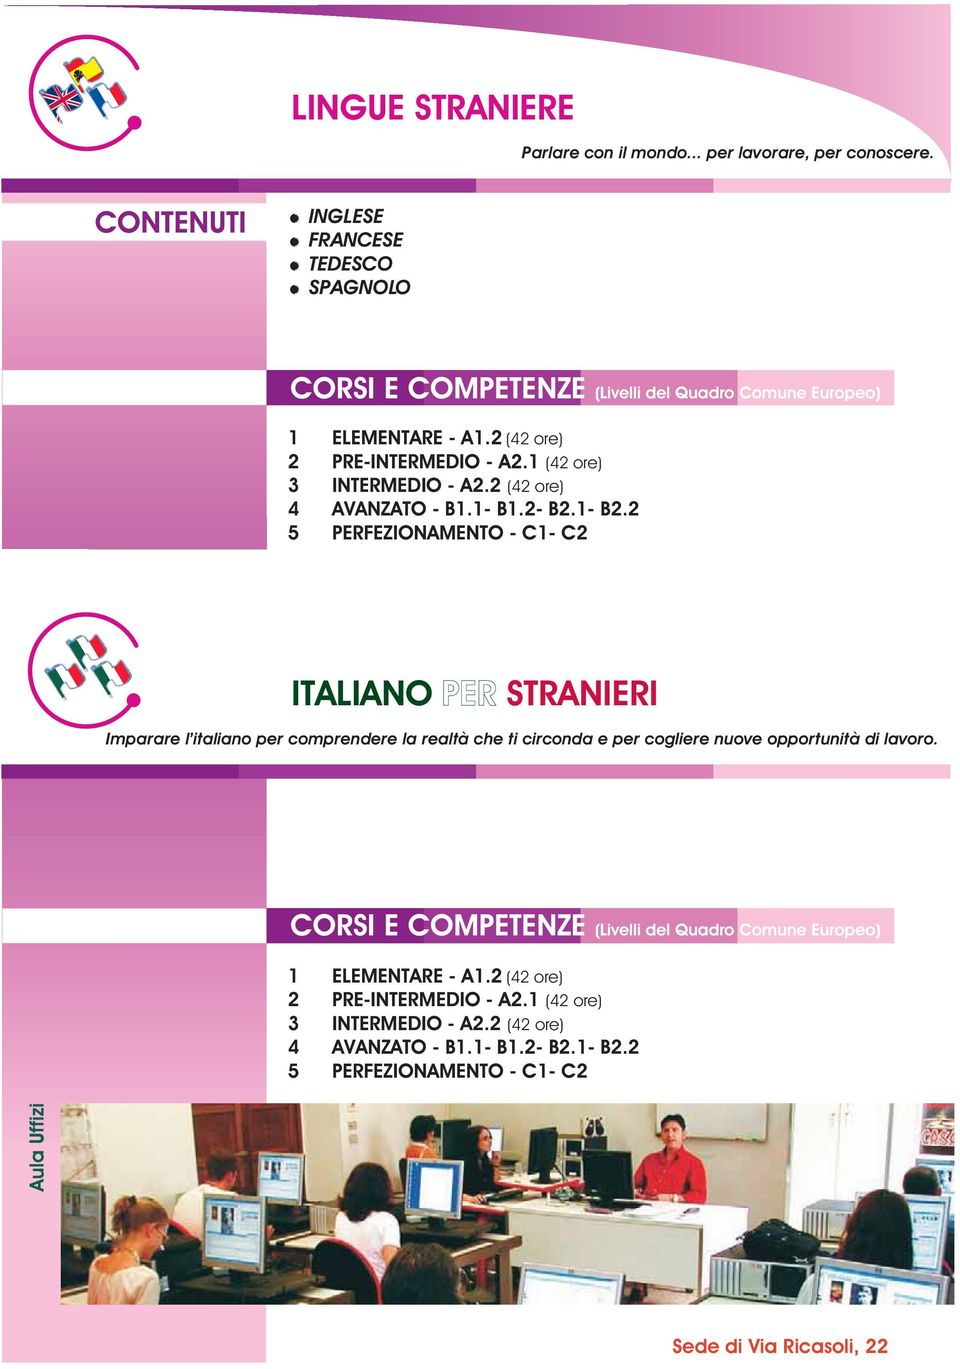 2 5 PERFEZIONAMENTO - C1- C2 ITALIANO PER STRANIERI Imparare l italiano per comprendere la realtà che ti circonda e per cogliere nuove opportunità di lavoro.